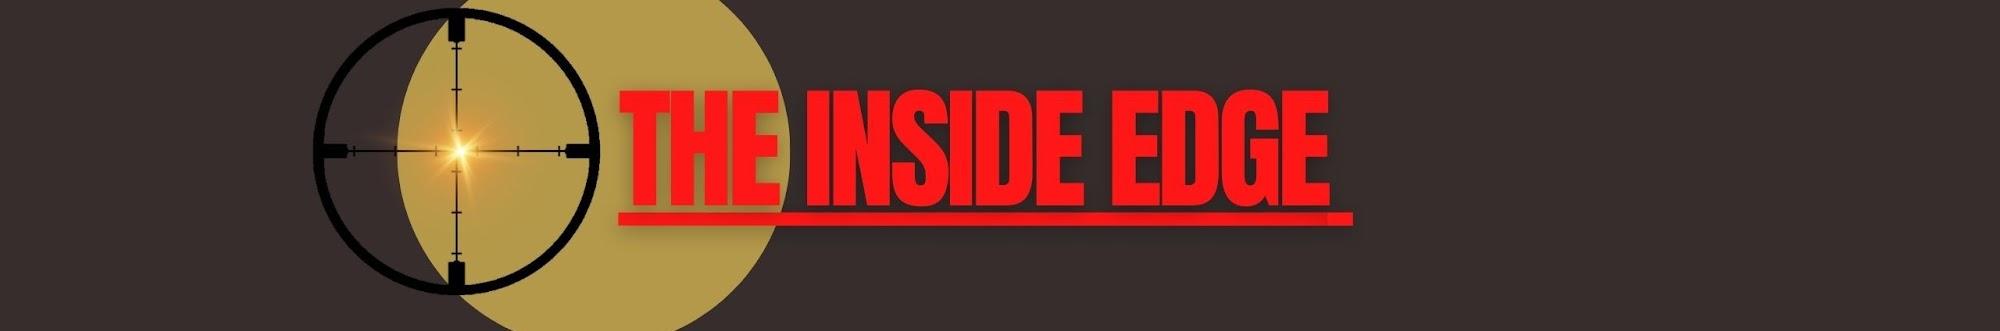 The Inside Edge